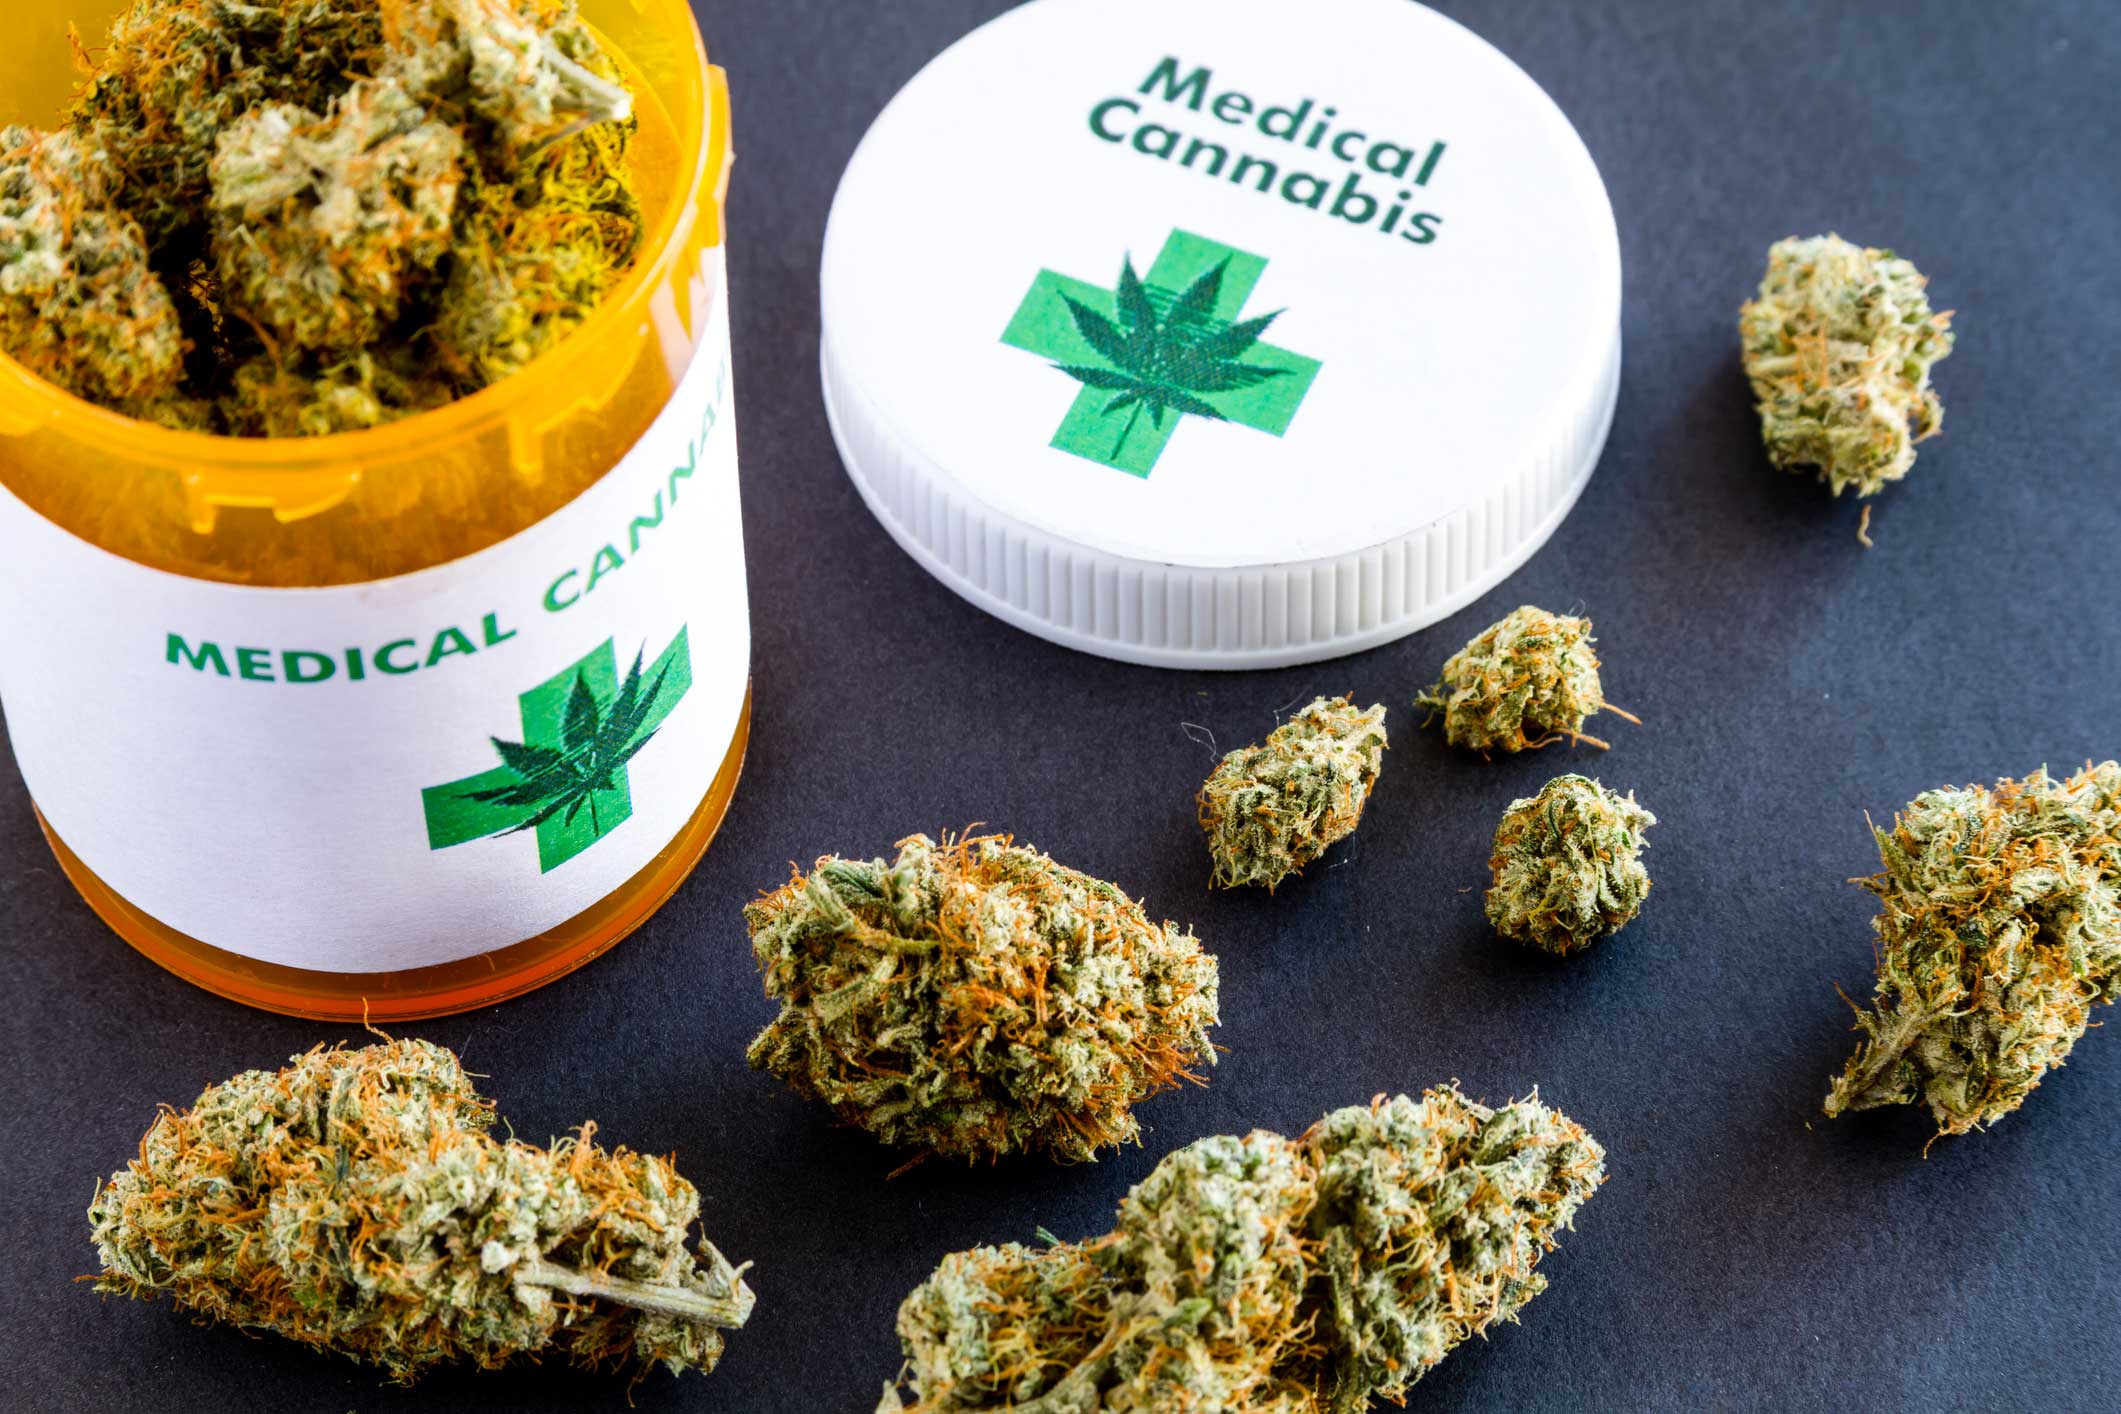 Medical cannabis межвенцовый утеплитель из конопли